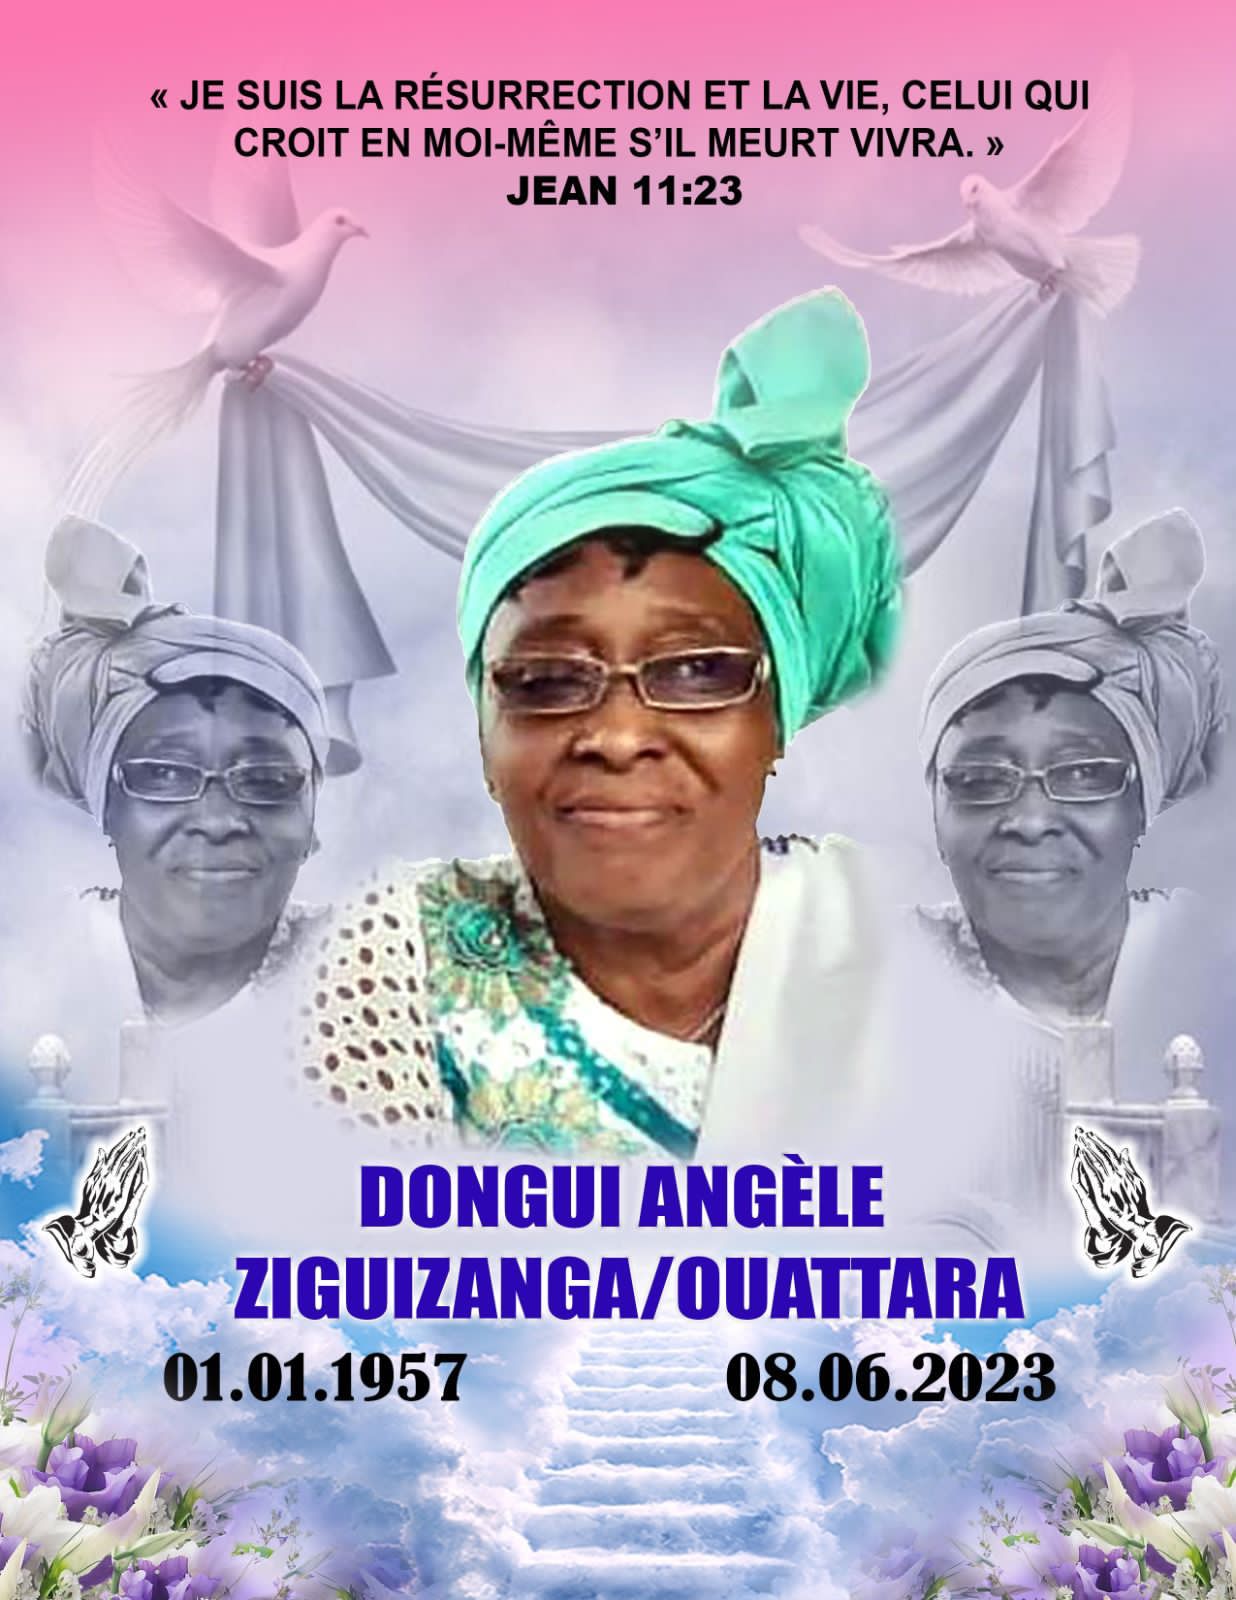 Décès de Ziguizanga/Ouattara Dongui Angèle : Remerciements